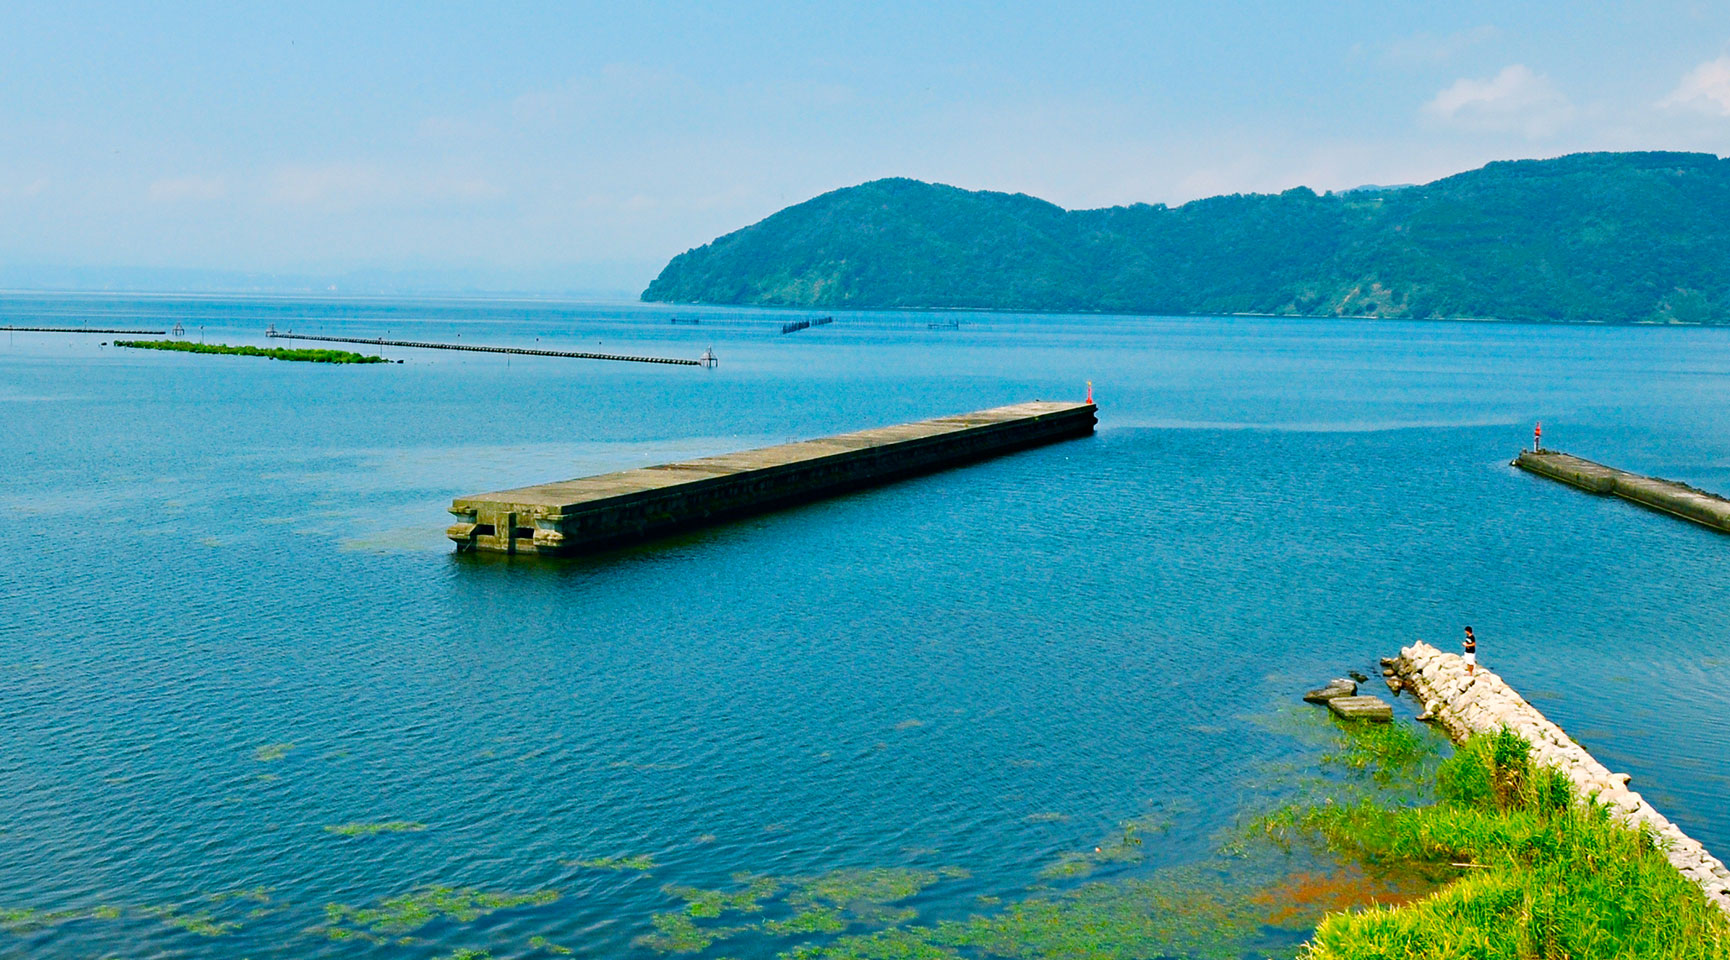 琵琶湖湖畔